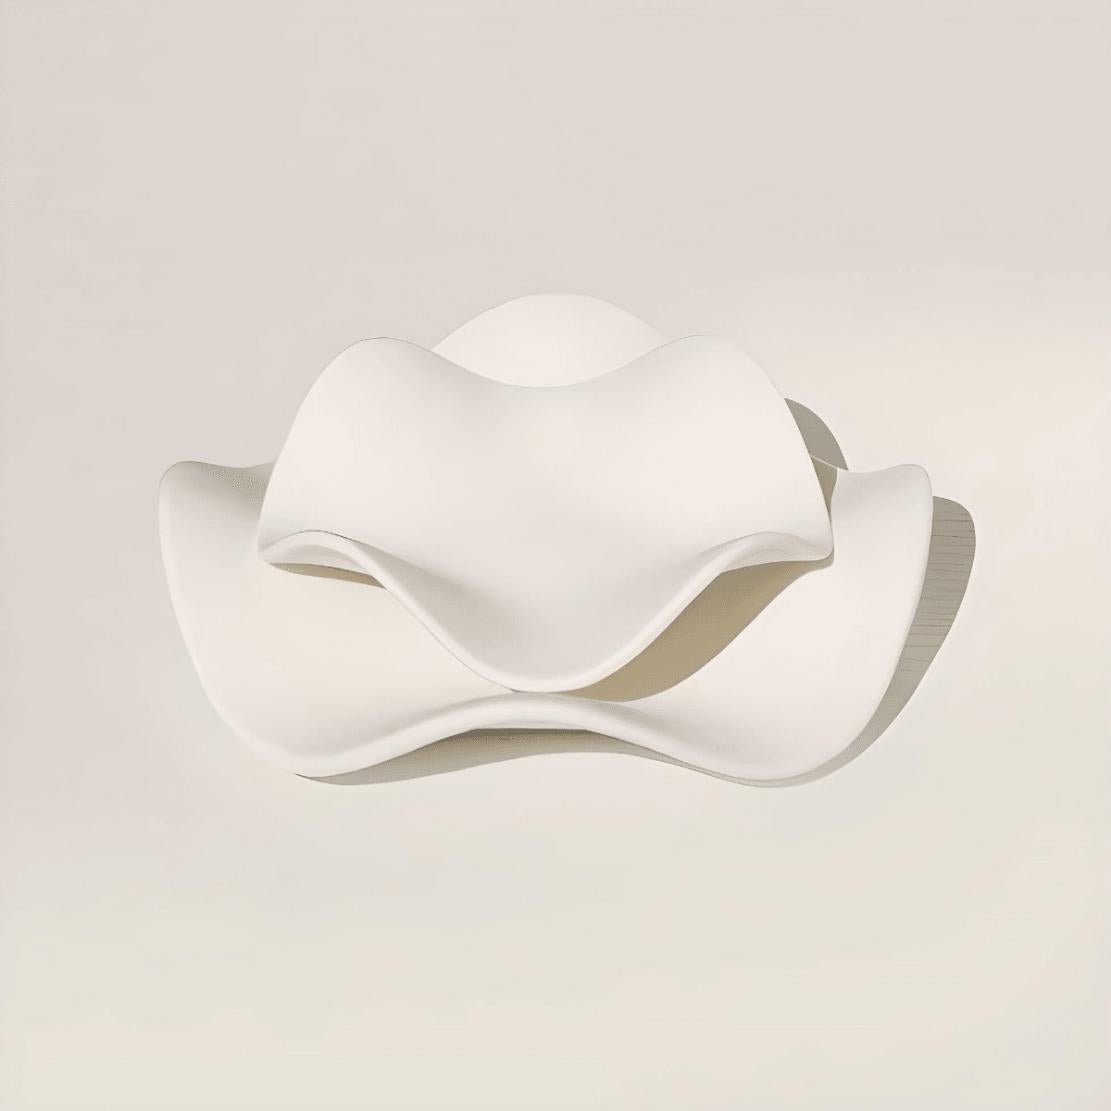 White, elegant, wavy bowls / set of 2